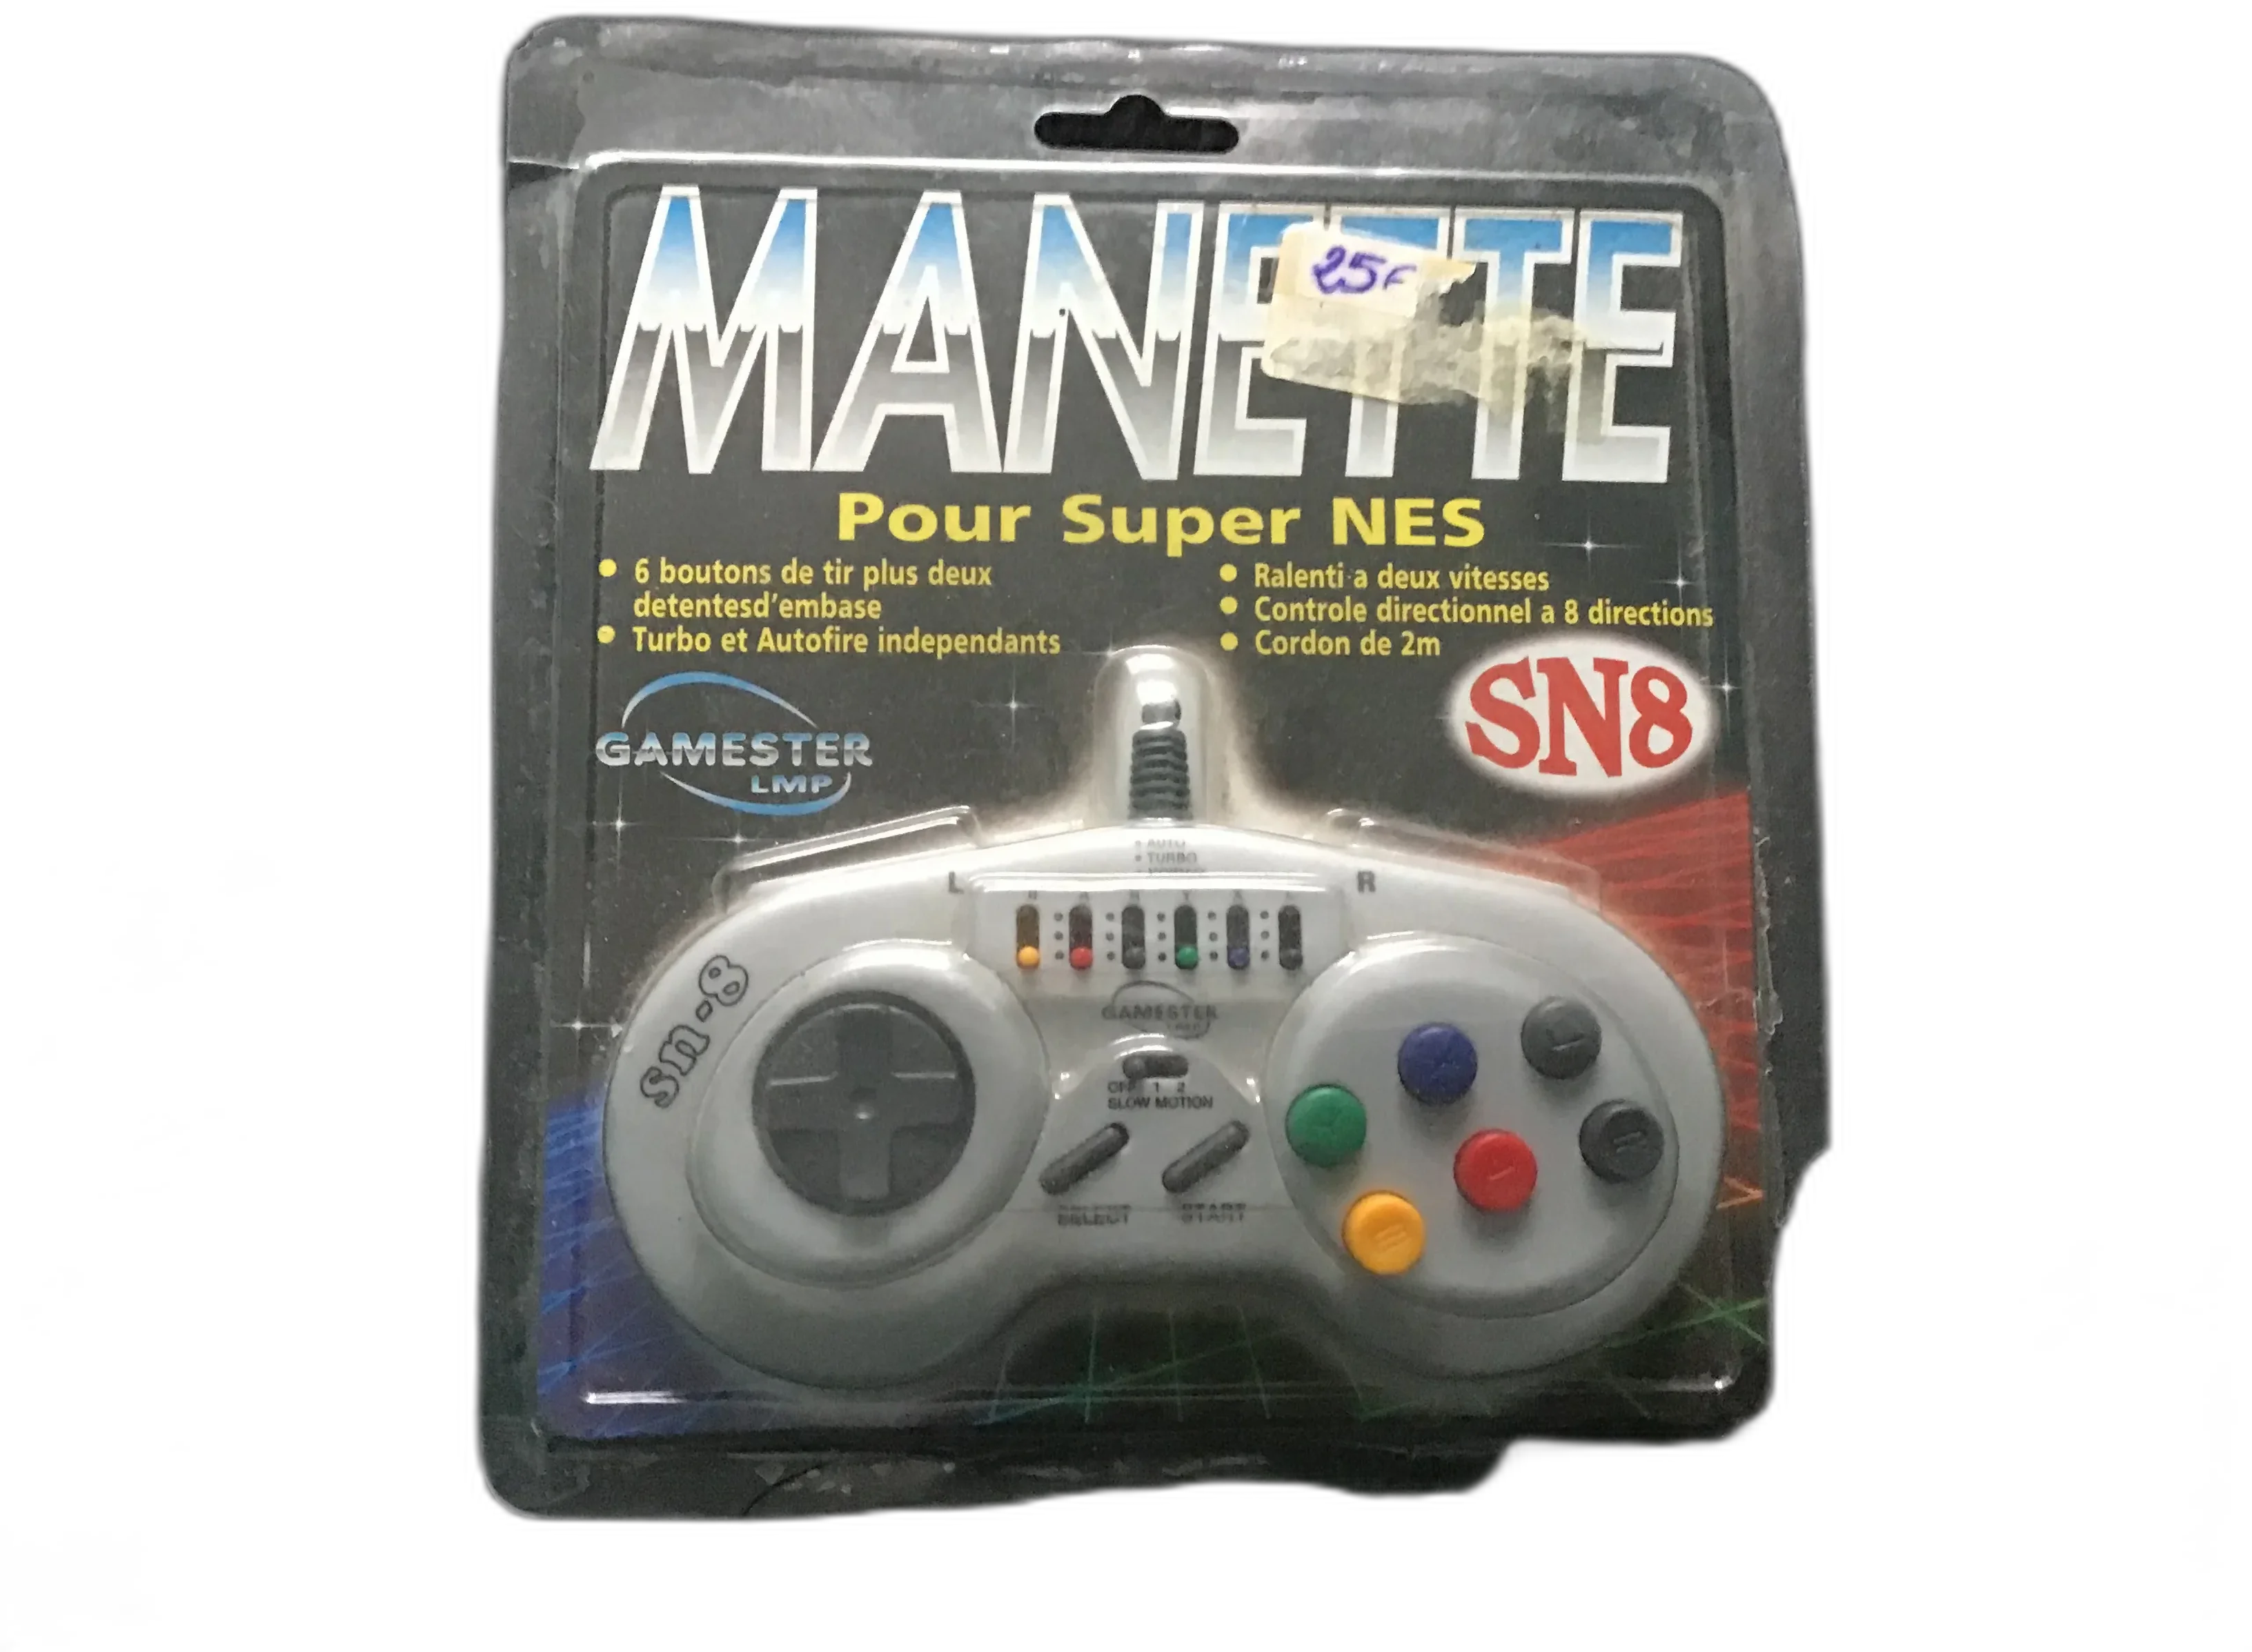  Gamester SNES SN8 Controller